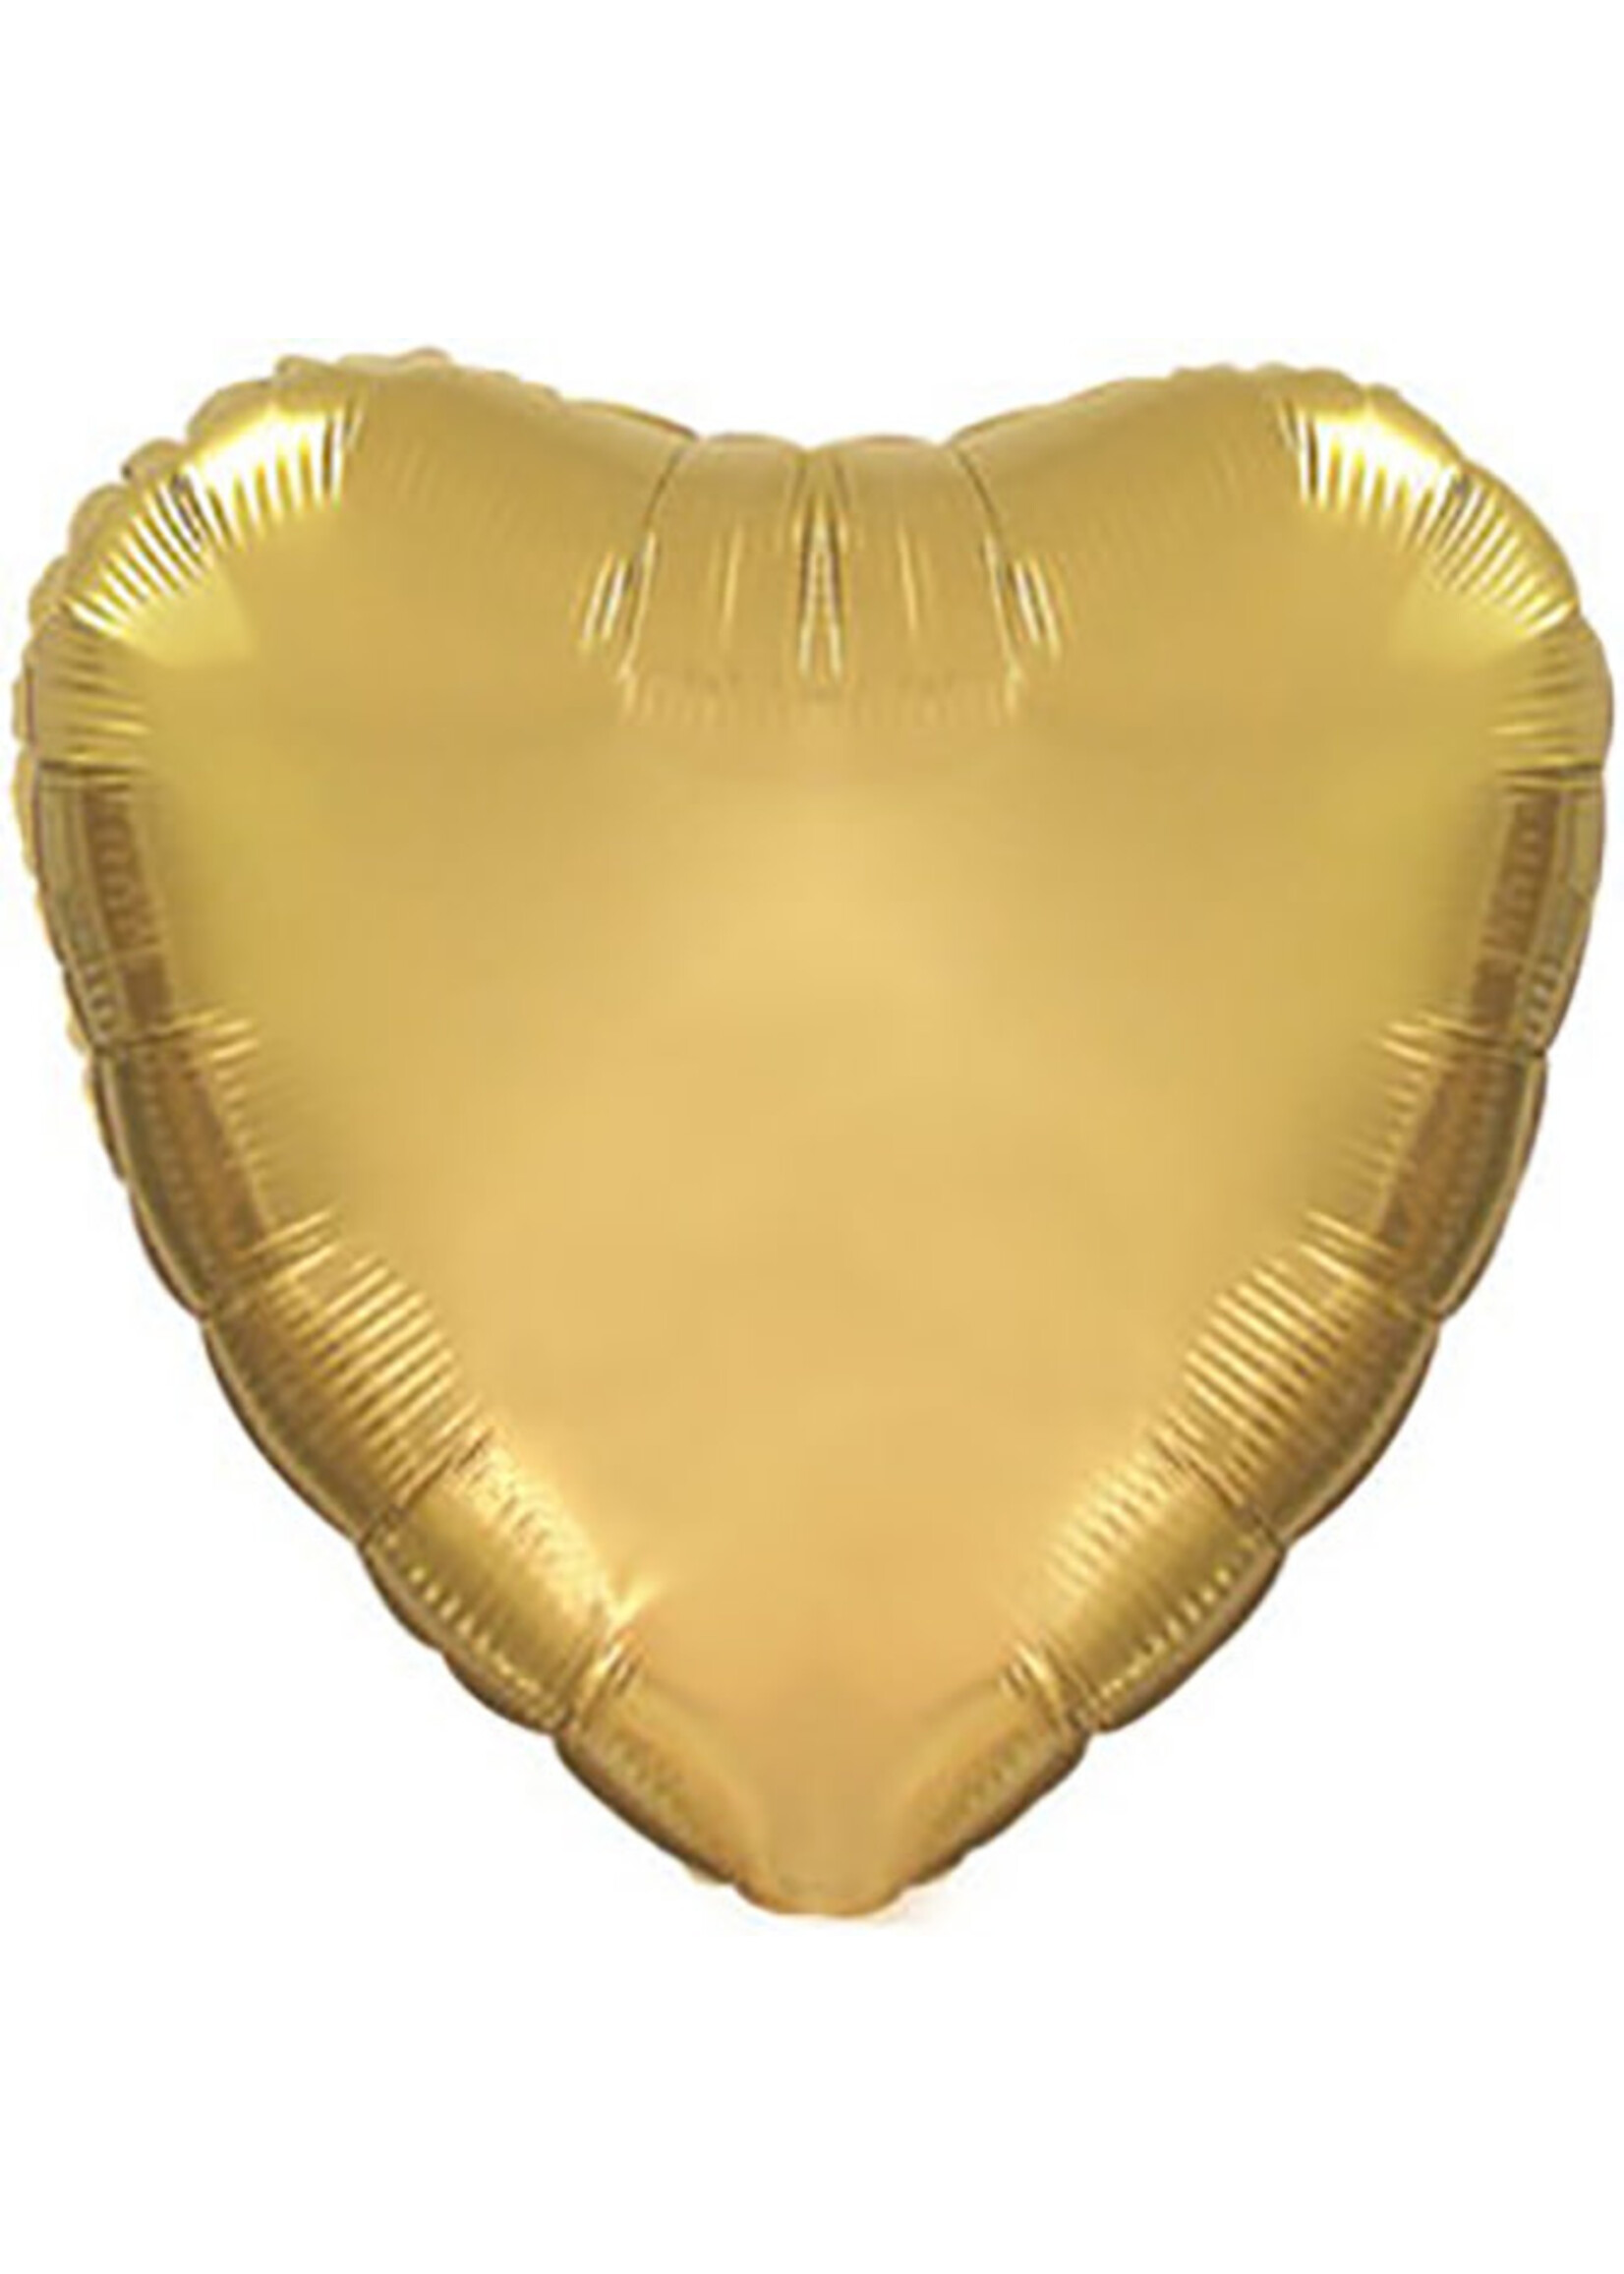 Feestkleding Breda Folie ballon hart goud 32 inch / 81cm